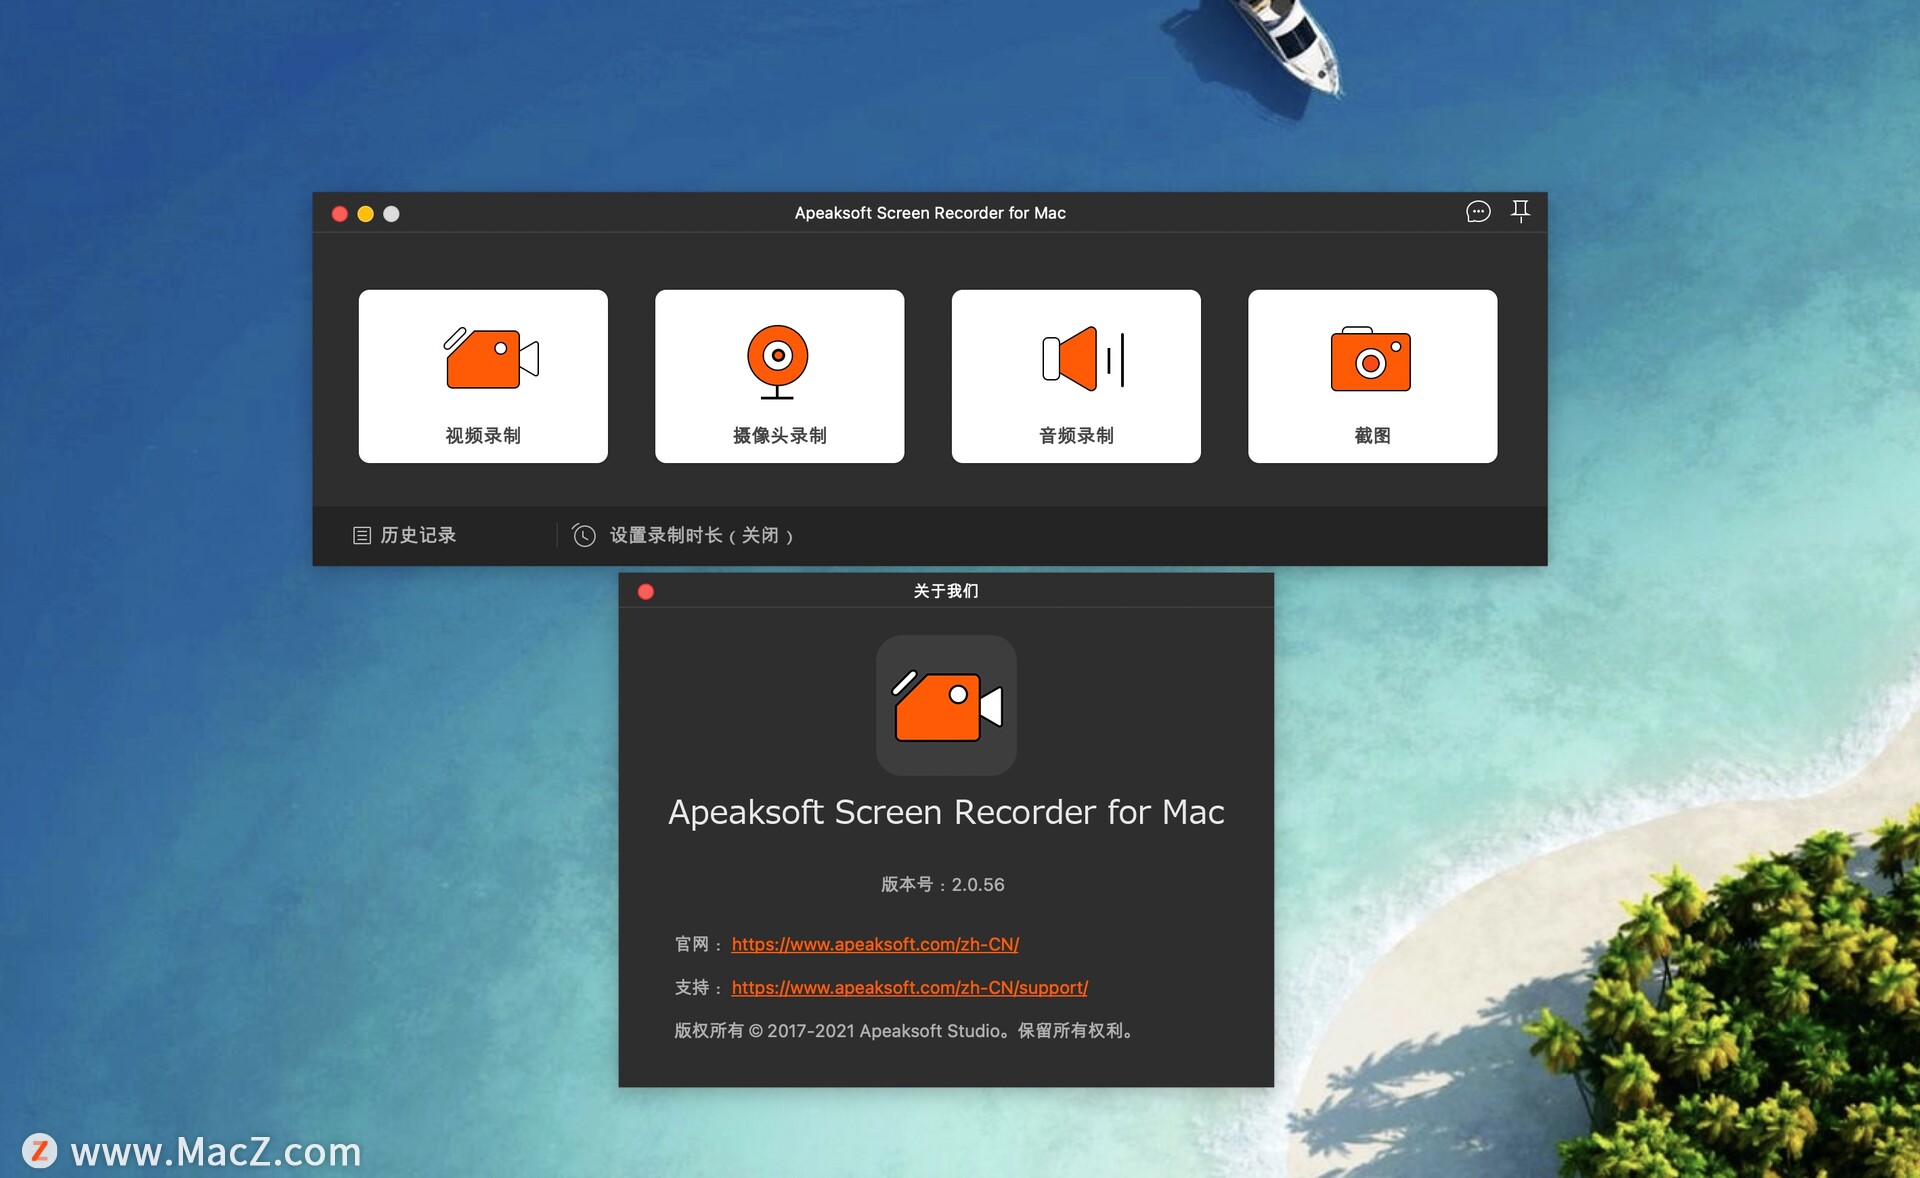 Apeaksoft Screen Recorder 2.3.8 free instals